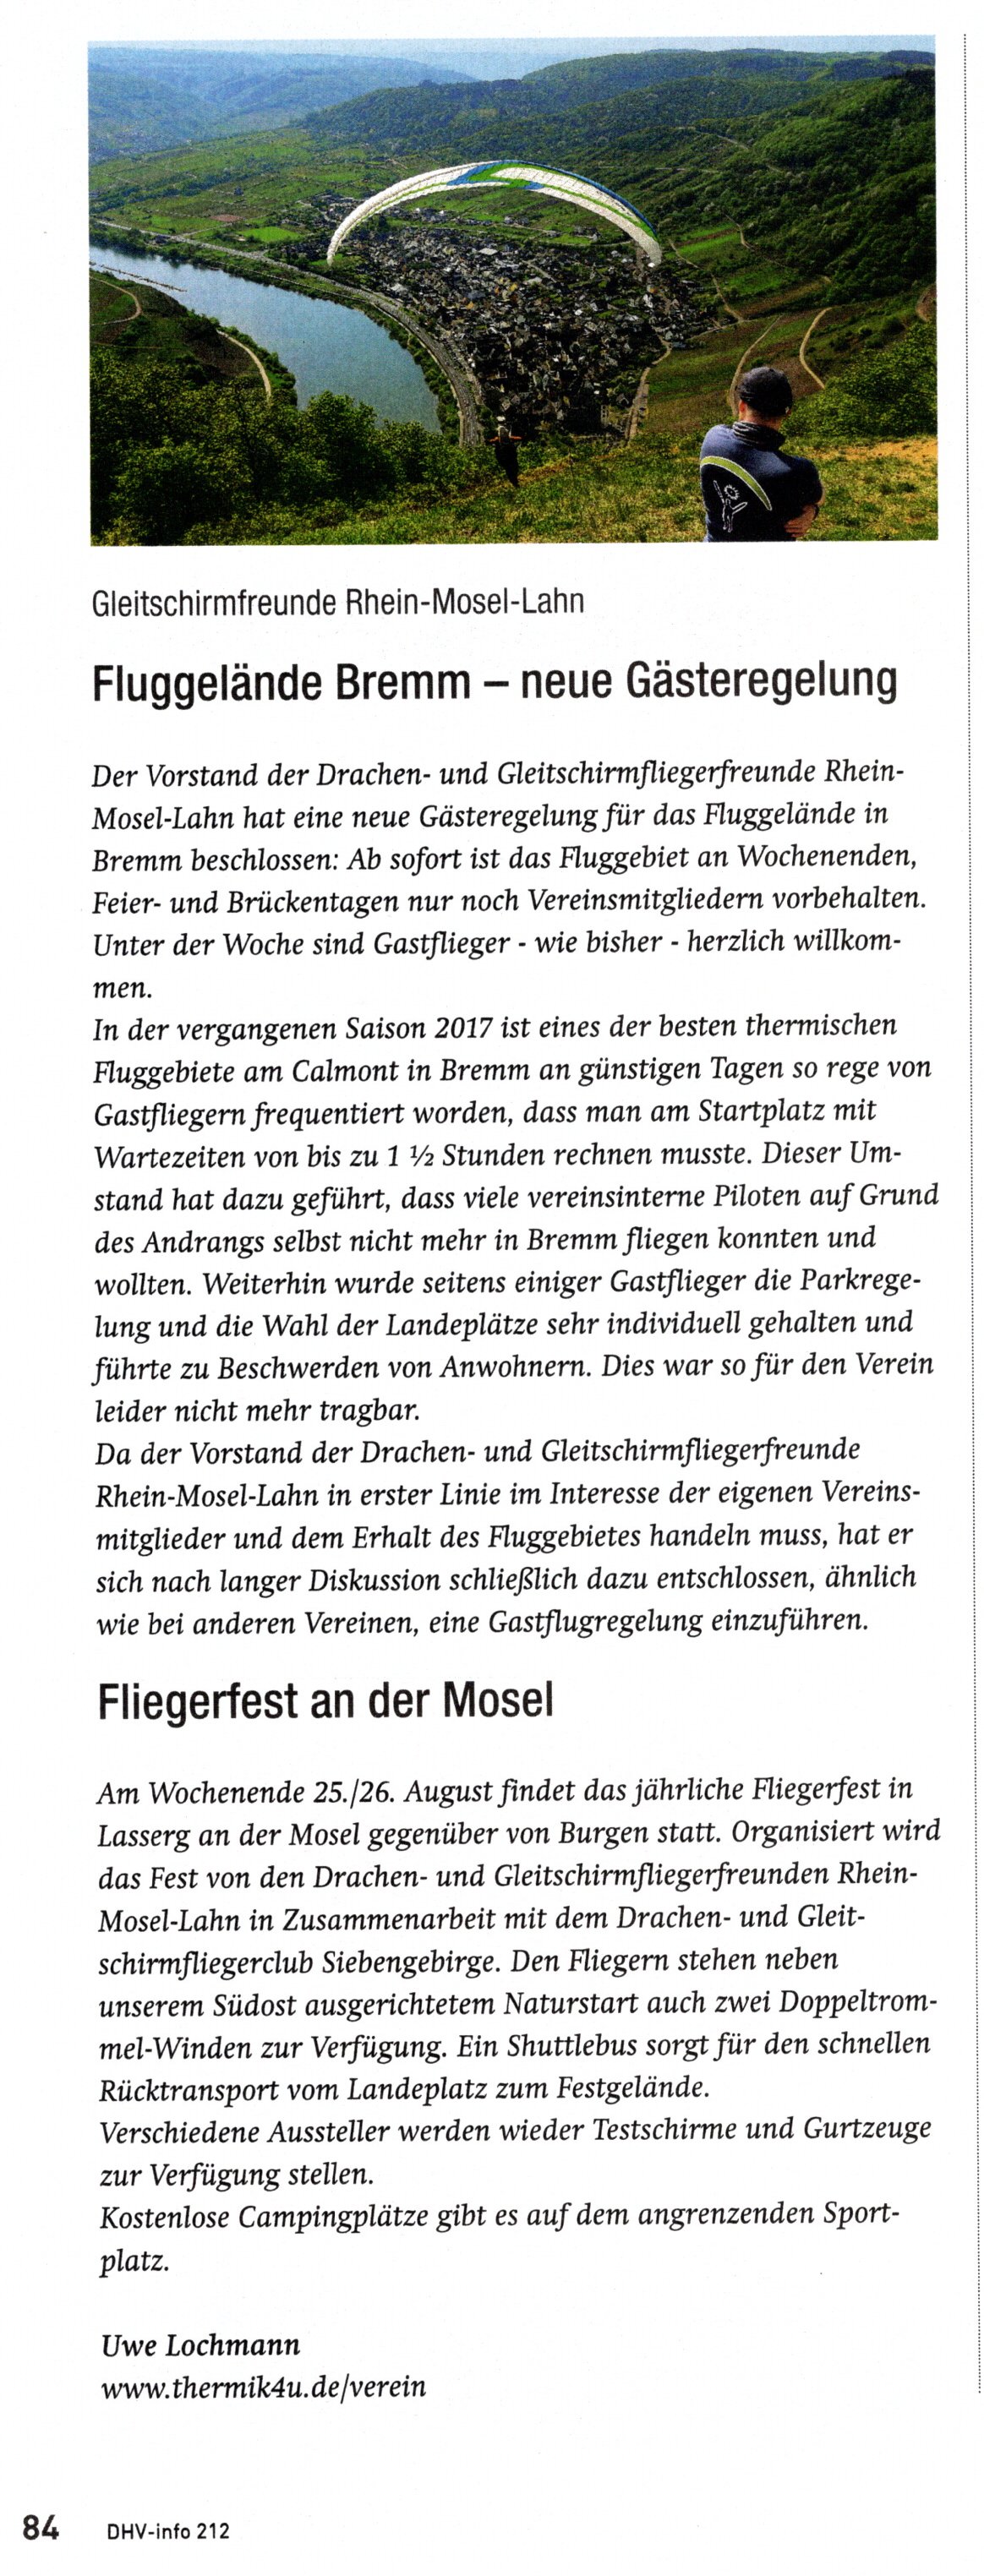 Fliegerfest und Gästeregelung Bremm 2018 - DHV Info (Ausgabe 212)